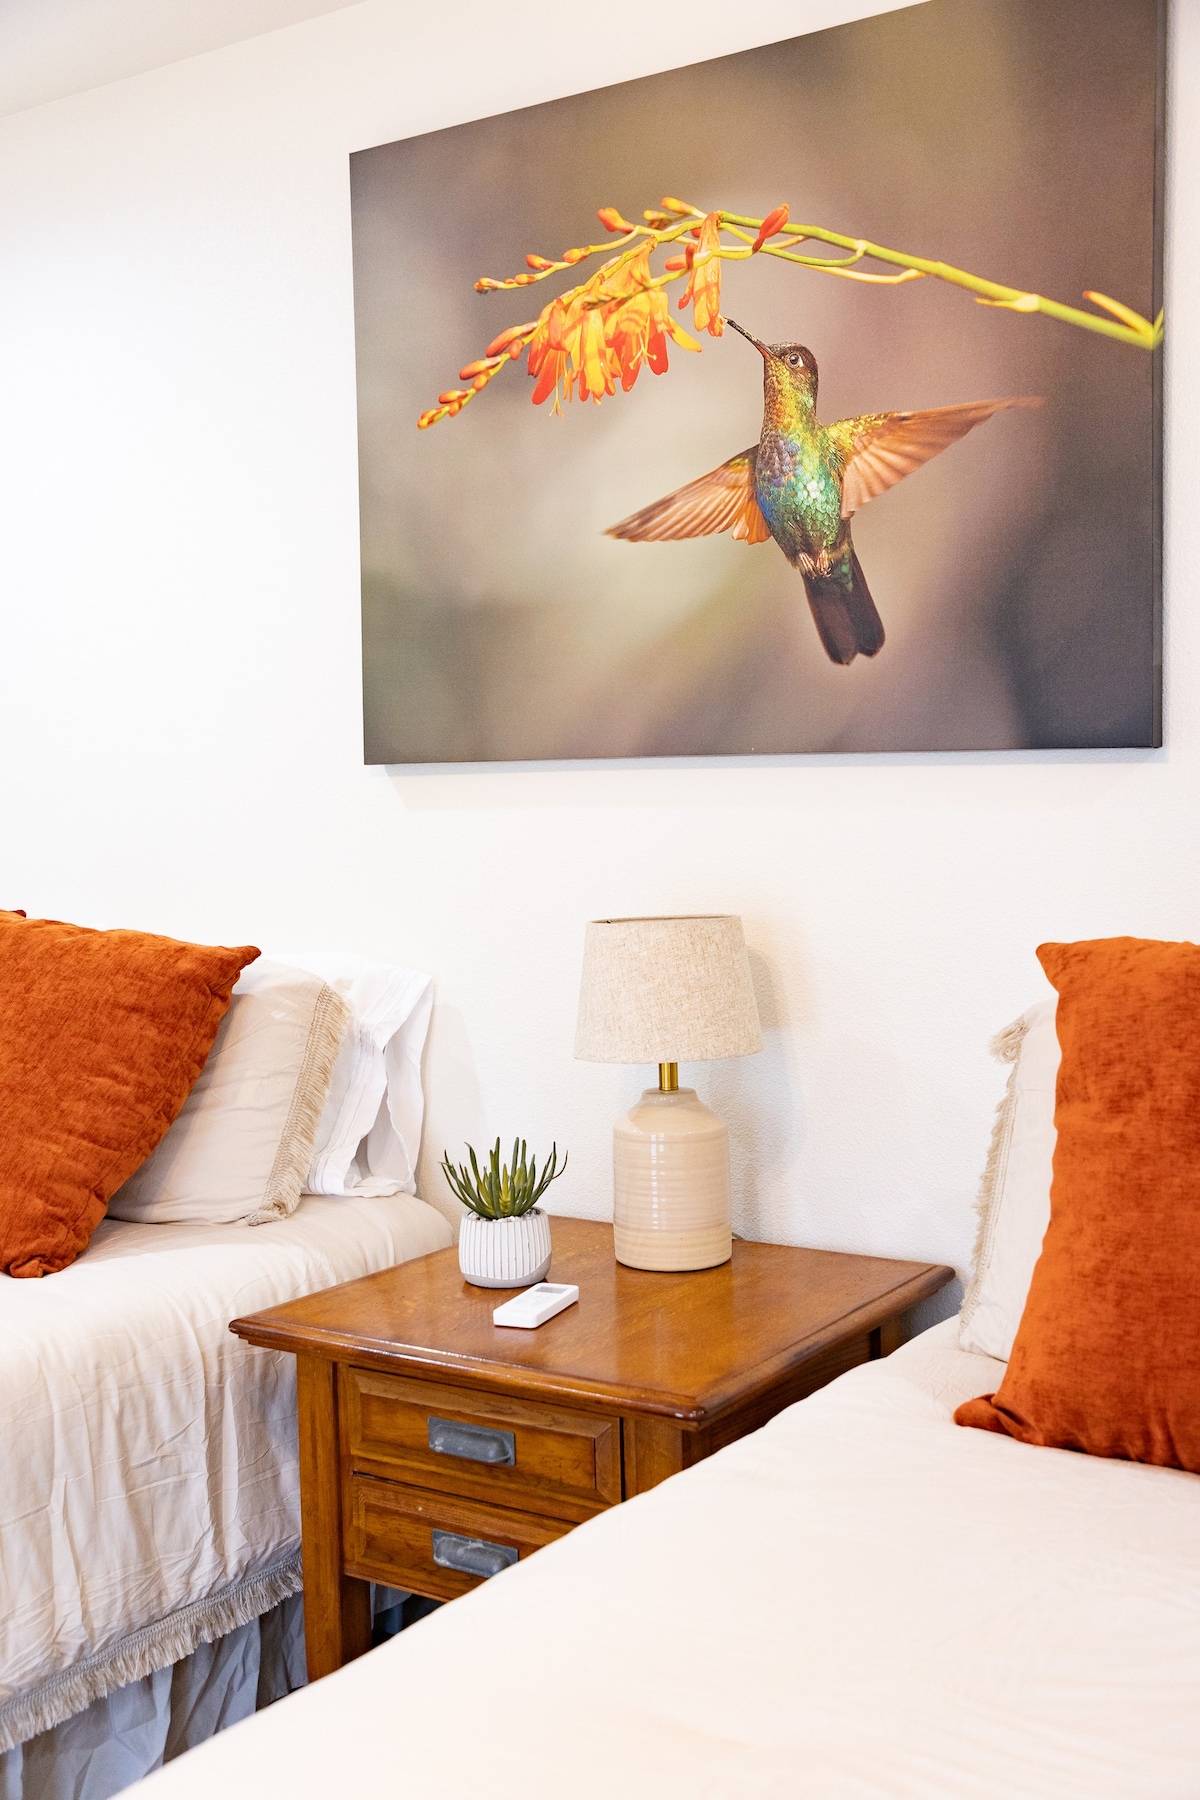 Hummingbird Lodge - Room 7